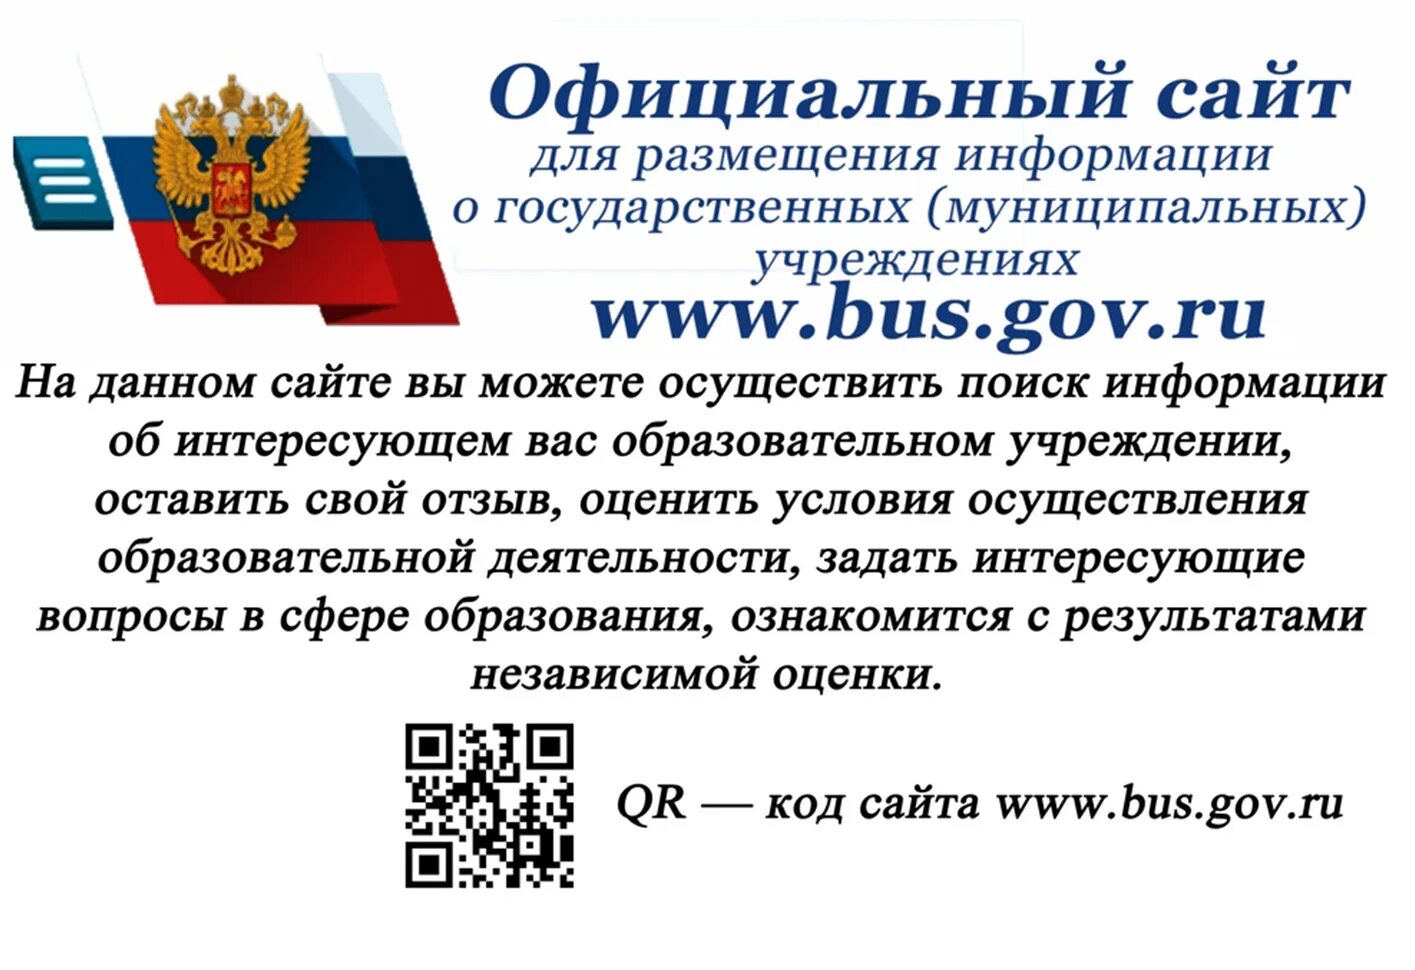 Портал размещения информации. Bus.gov.ru баннер. Независимая оценка качества образовательных услуг. Https://Bus.gov.ru/. Размещение информации.